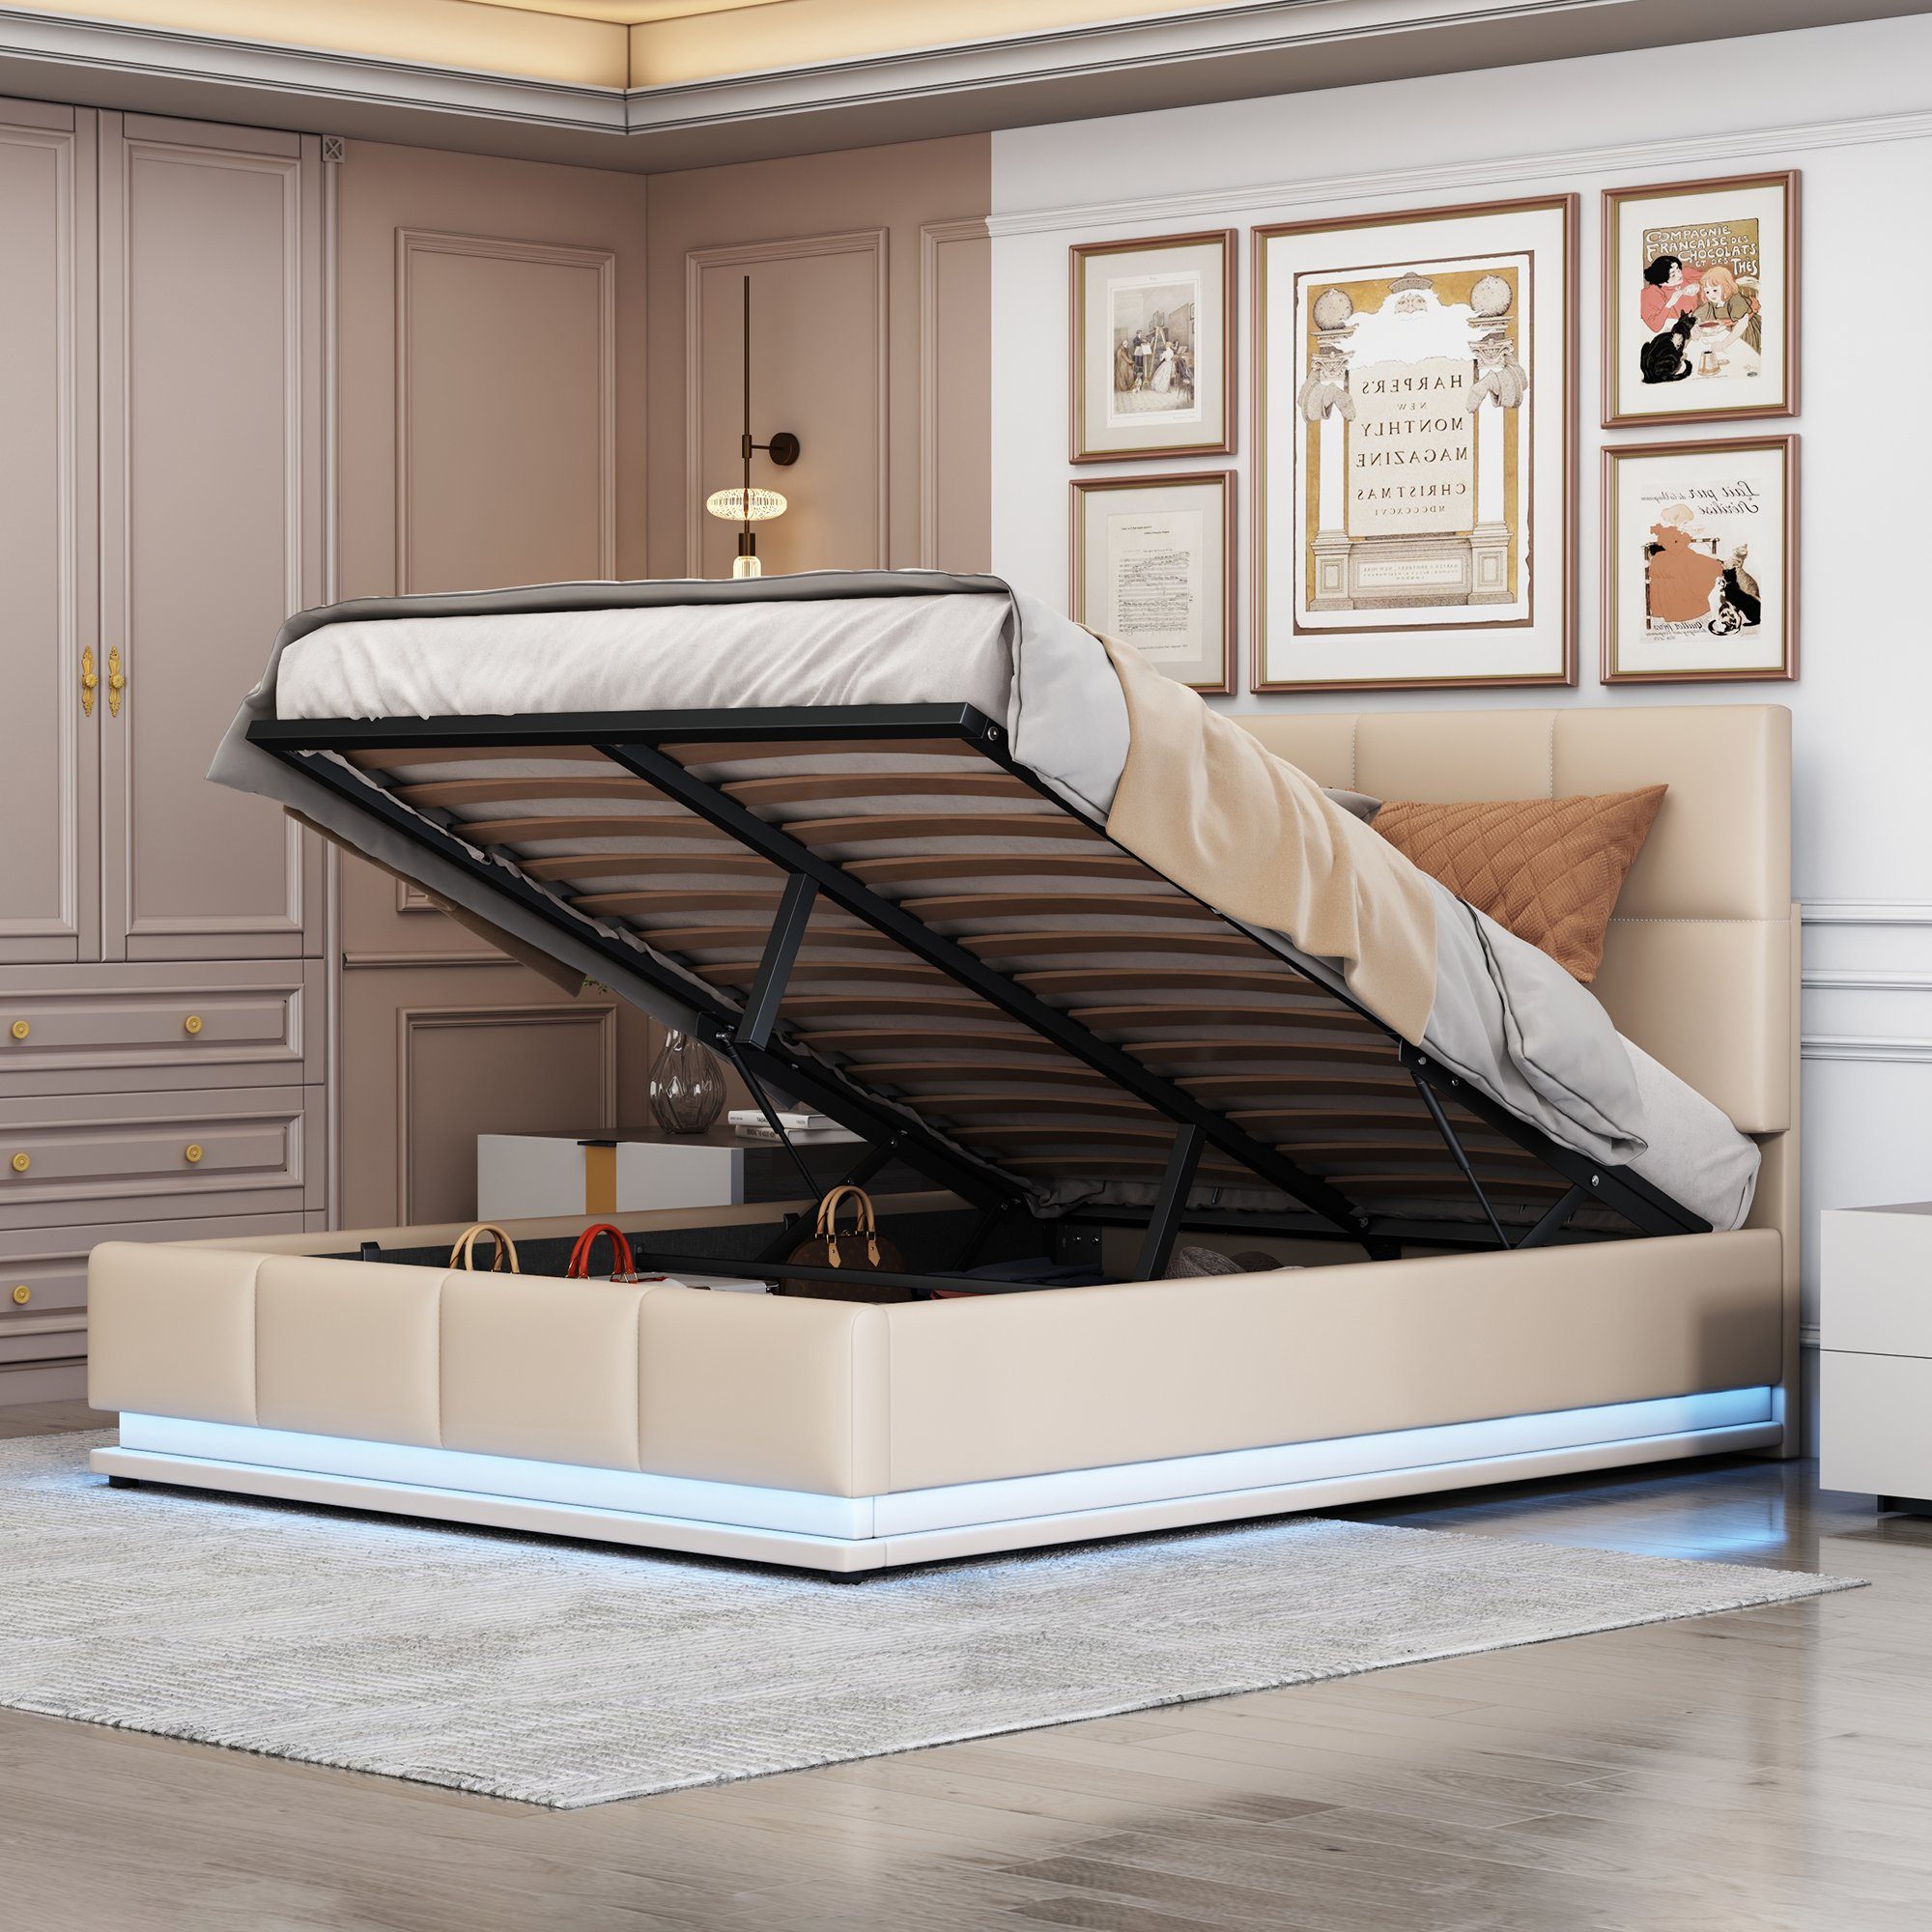 REDOM Polsterbett Doppelbett Bett Funktionsbett LED Hellgrau (mit Hydraulisch Beleuchtung aus Leder) Matratze ohne